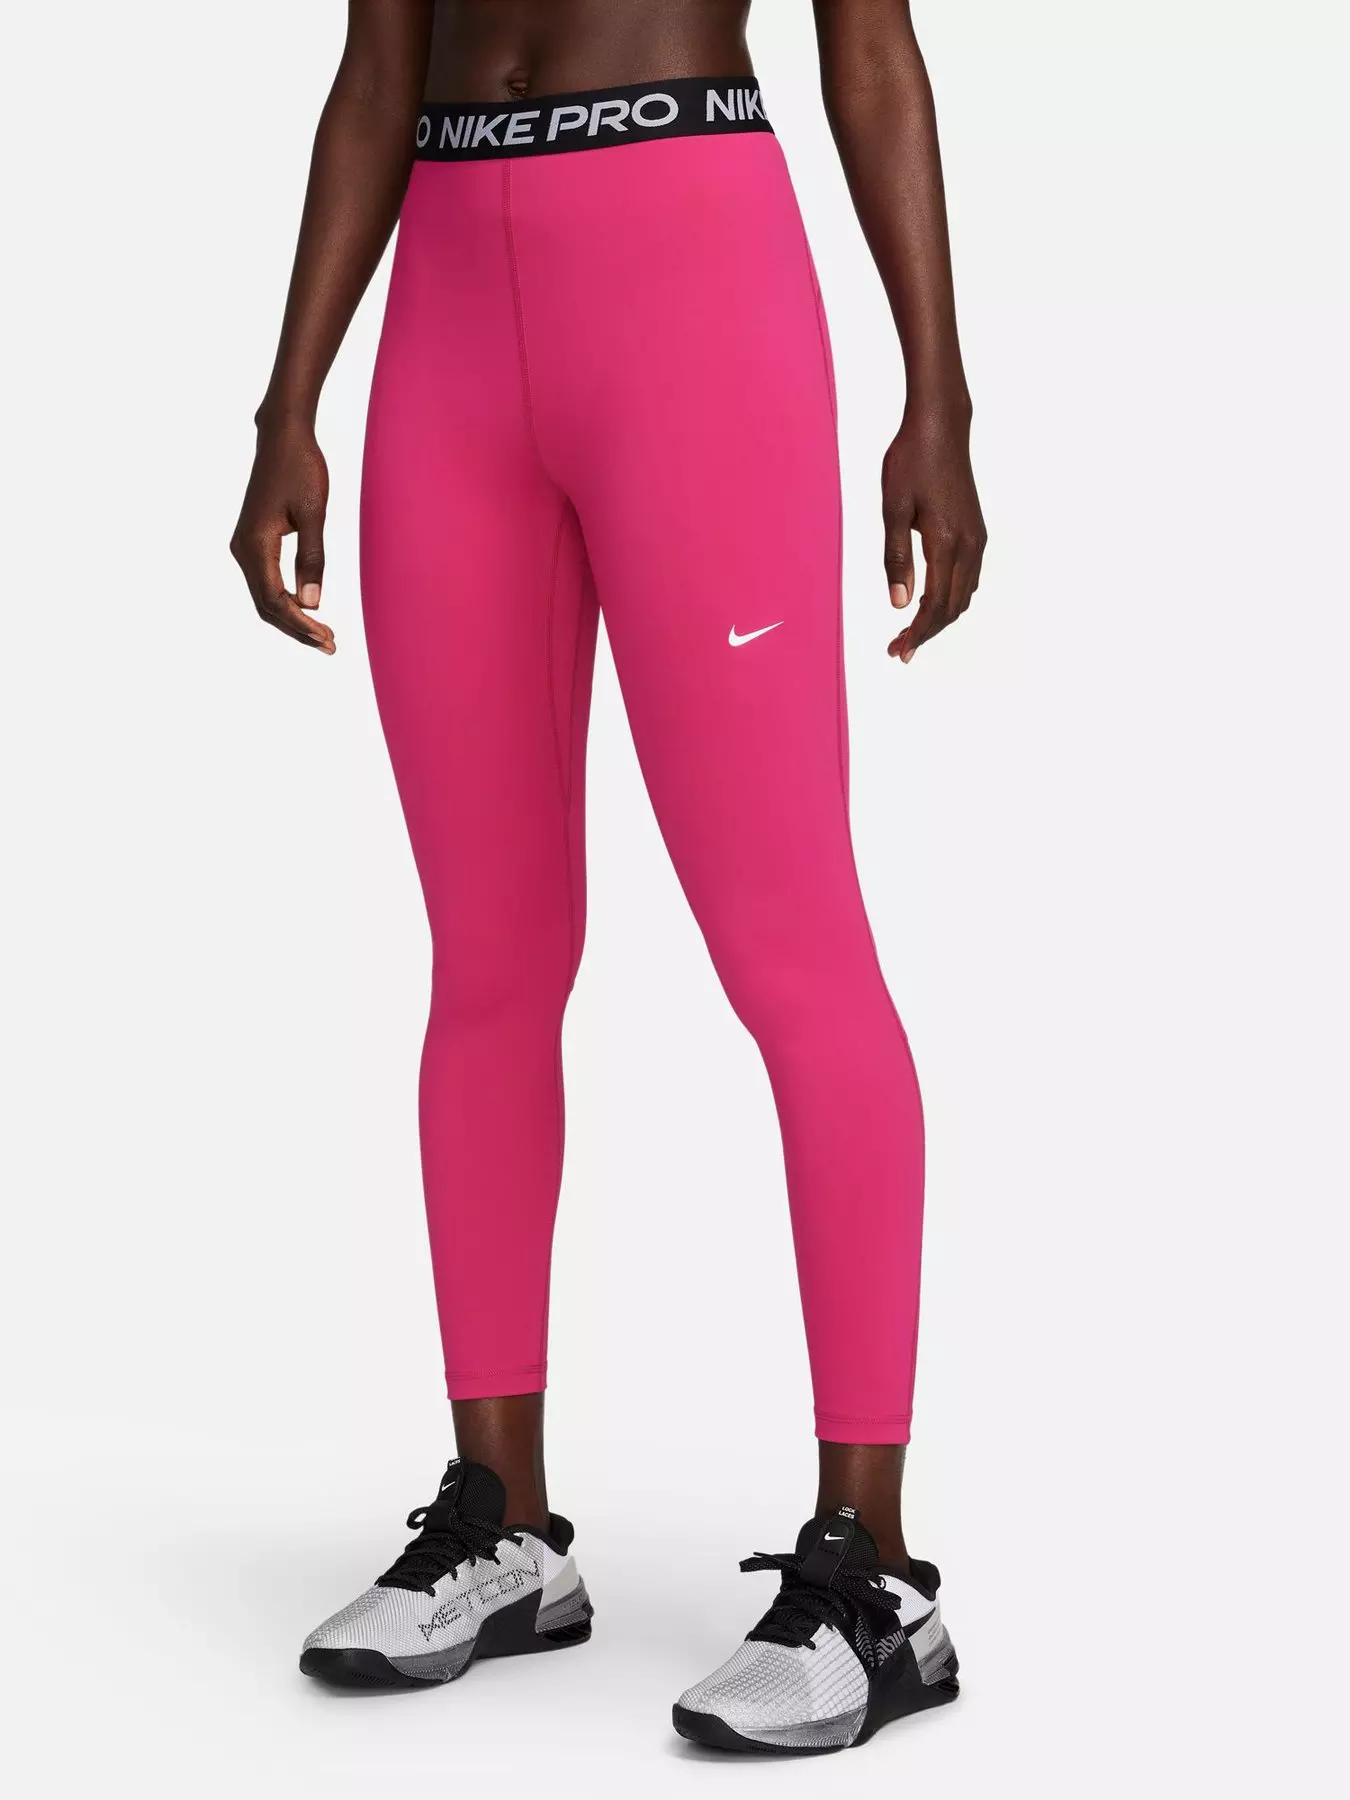 Nike womens legging pink - Gem